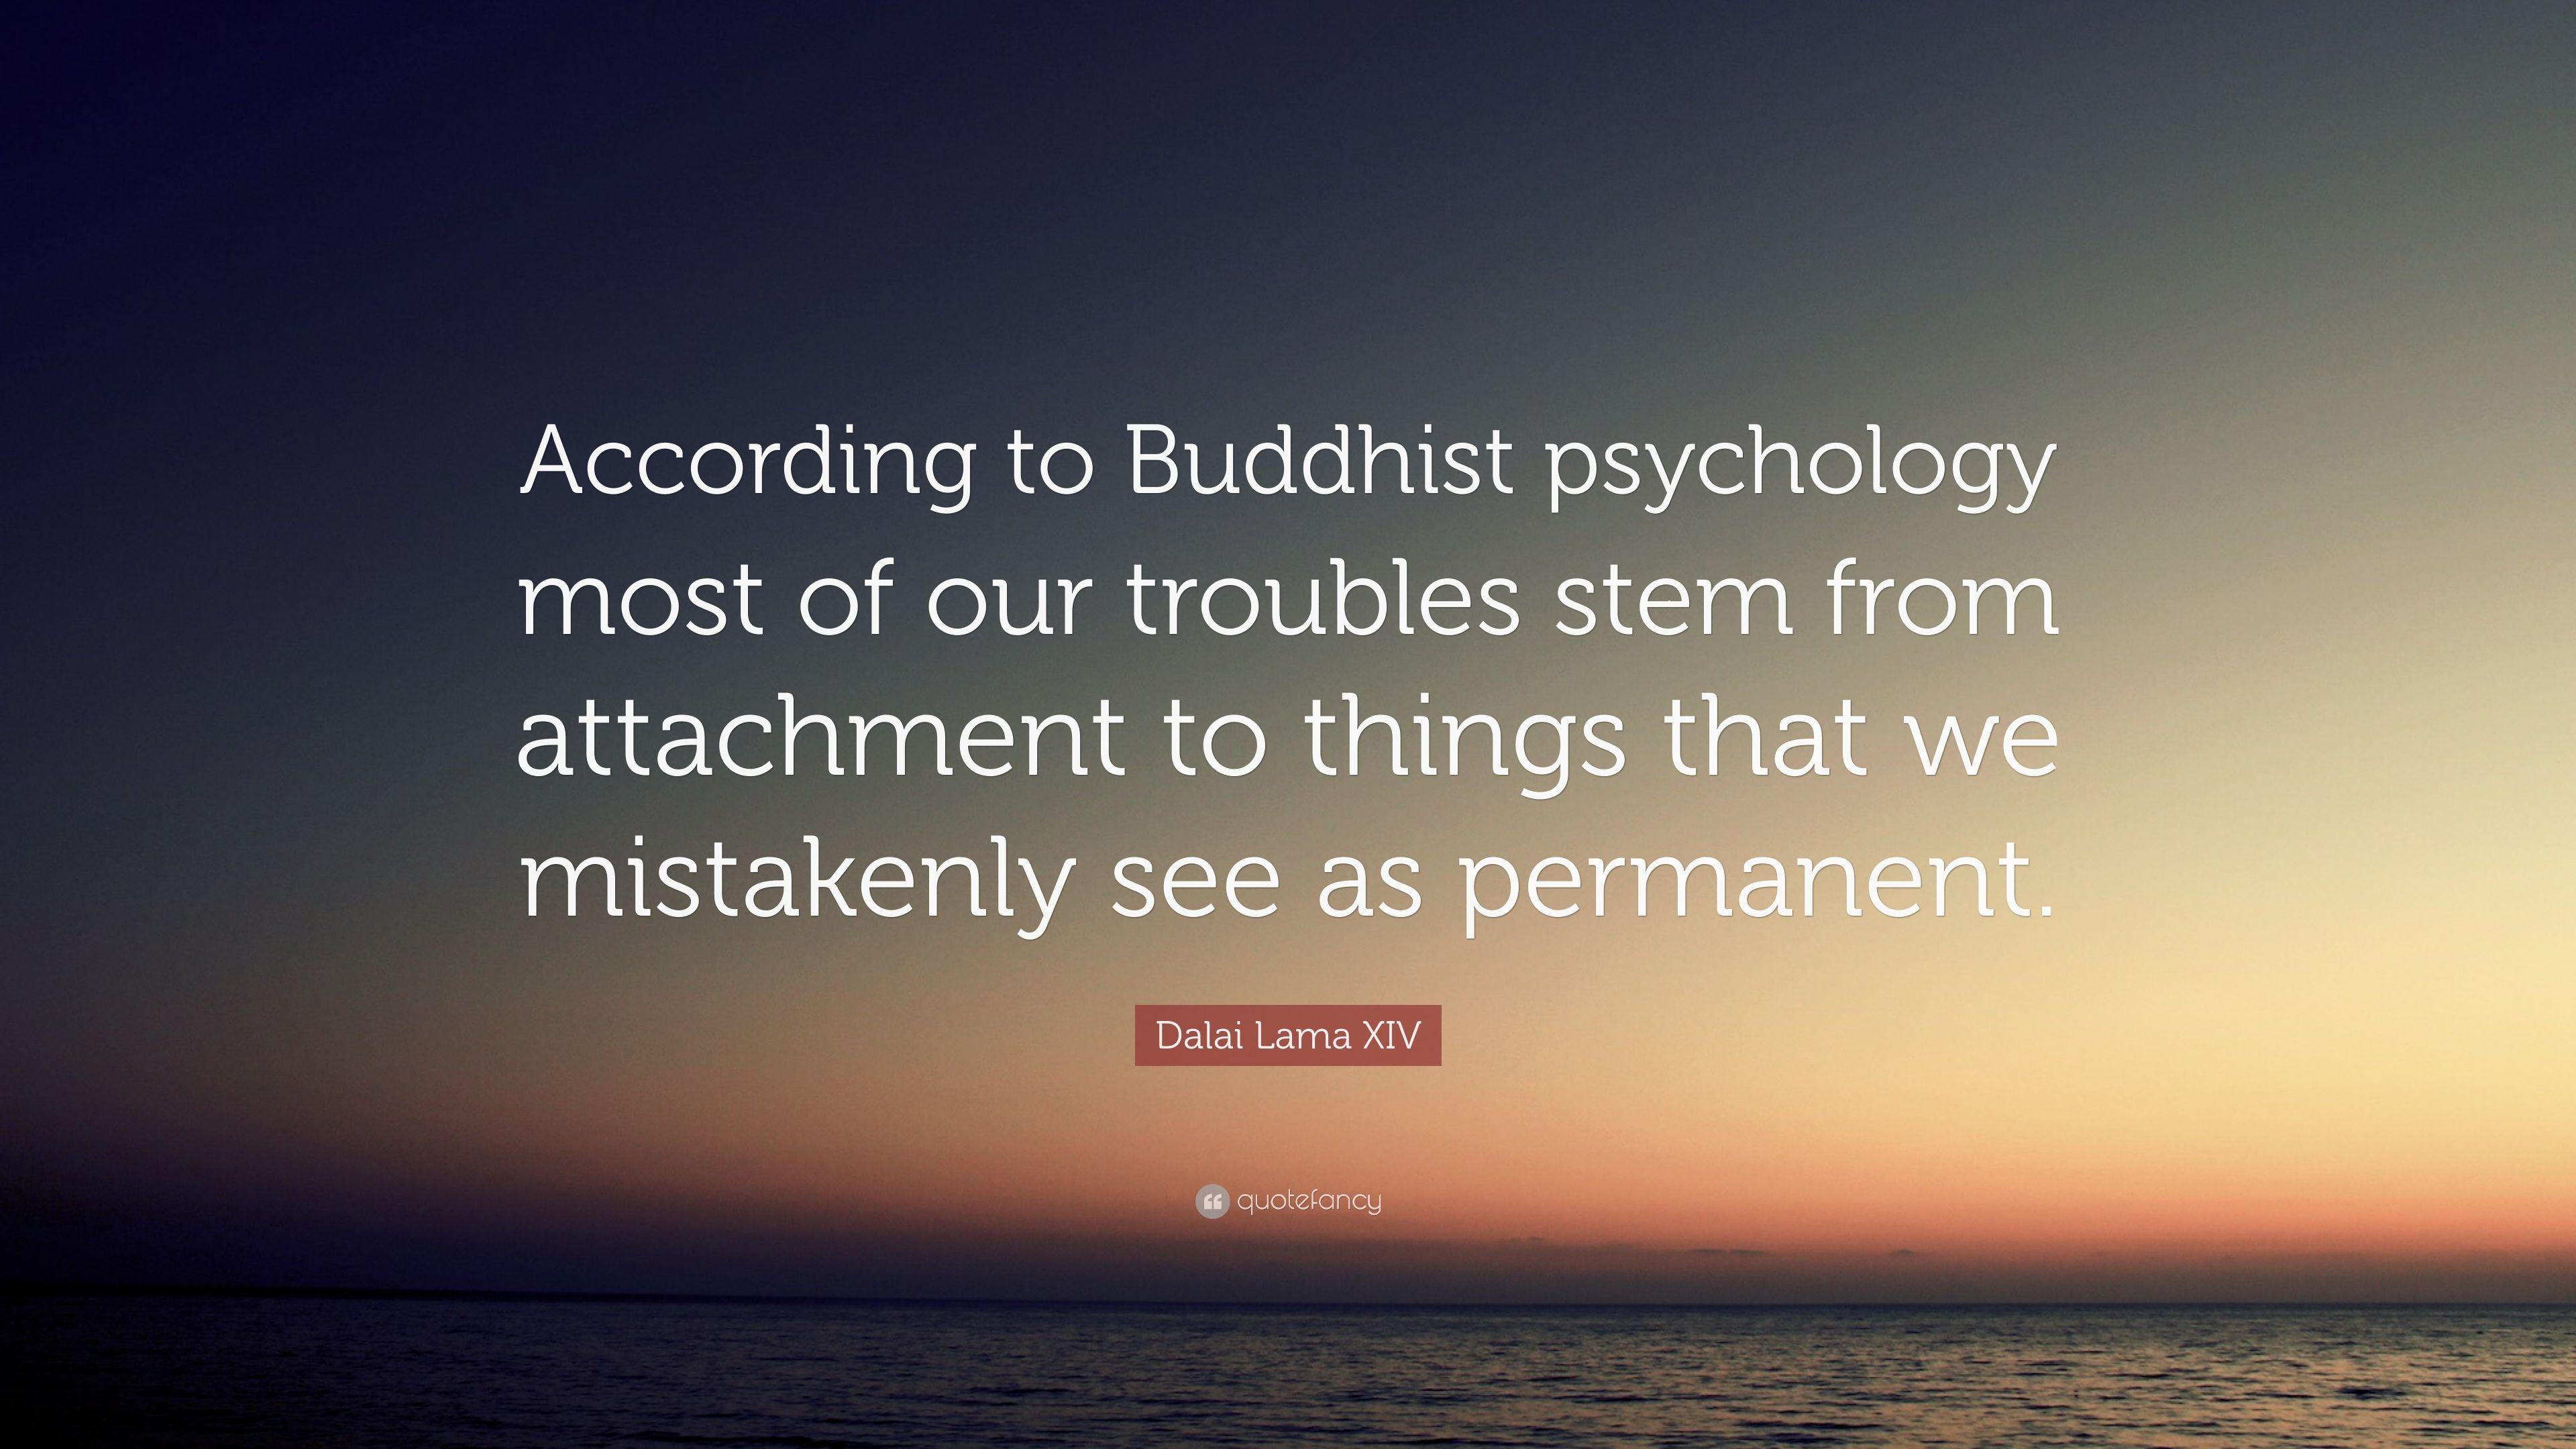 Dalai Lama XIV Quote: “According to Buddhist psychology most